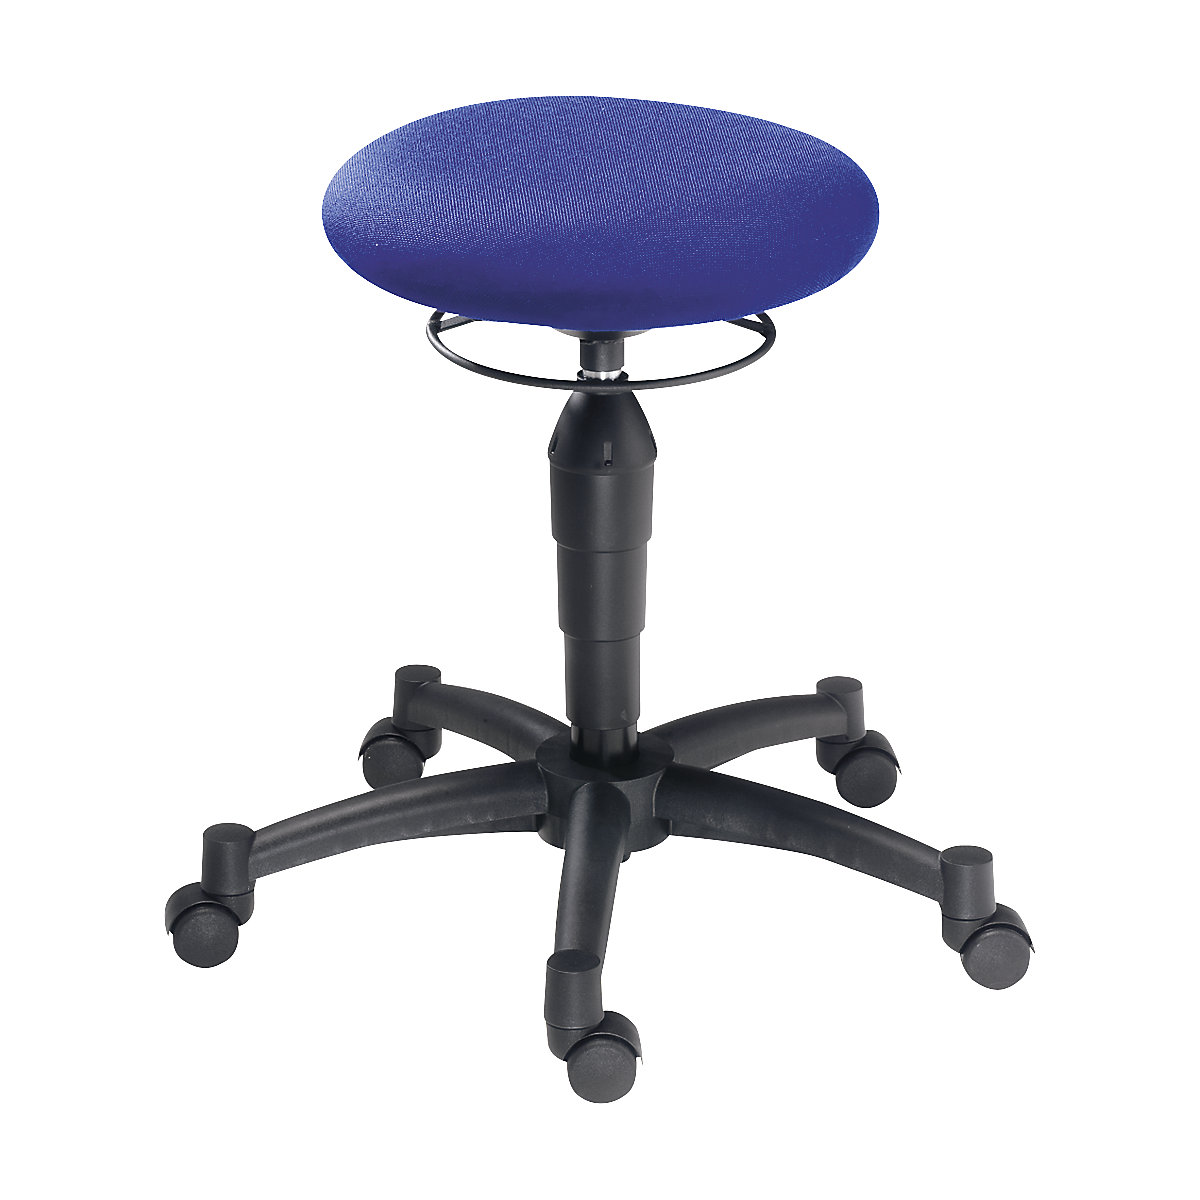 BALANCE 10 stool – Topstar